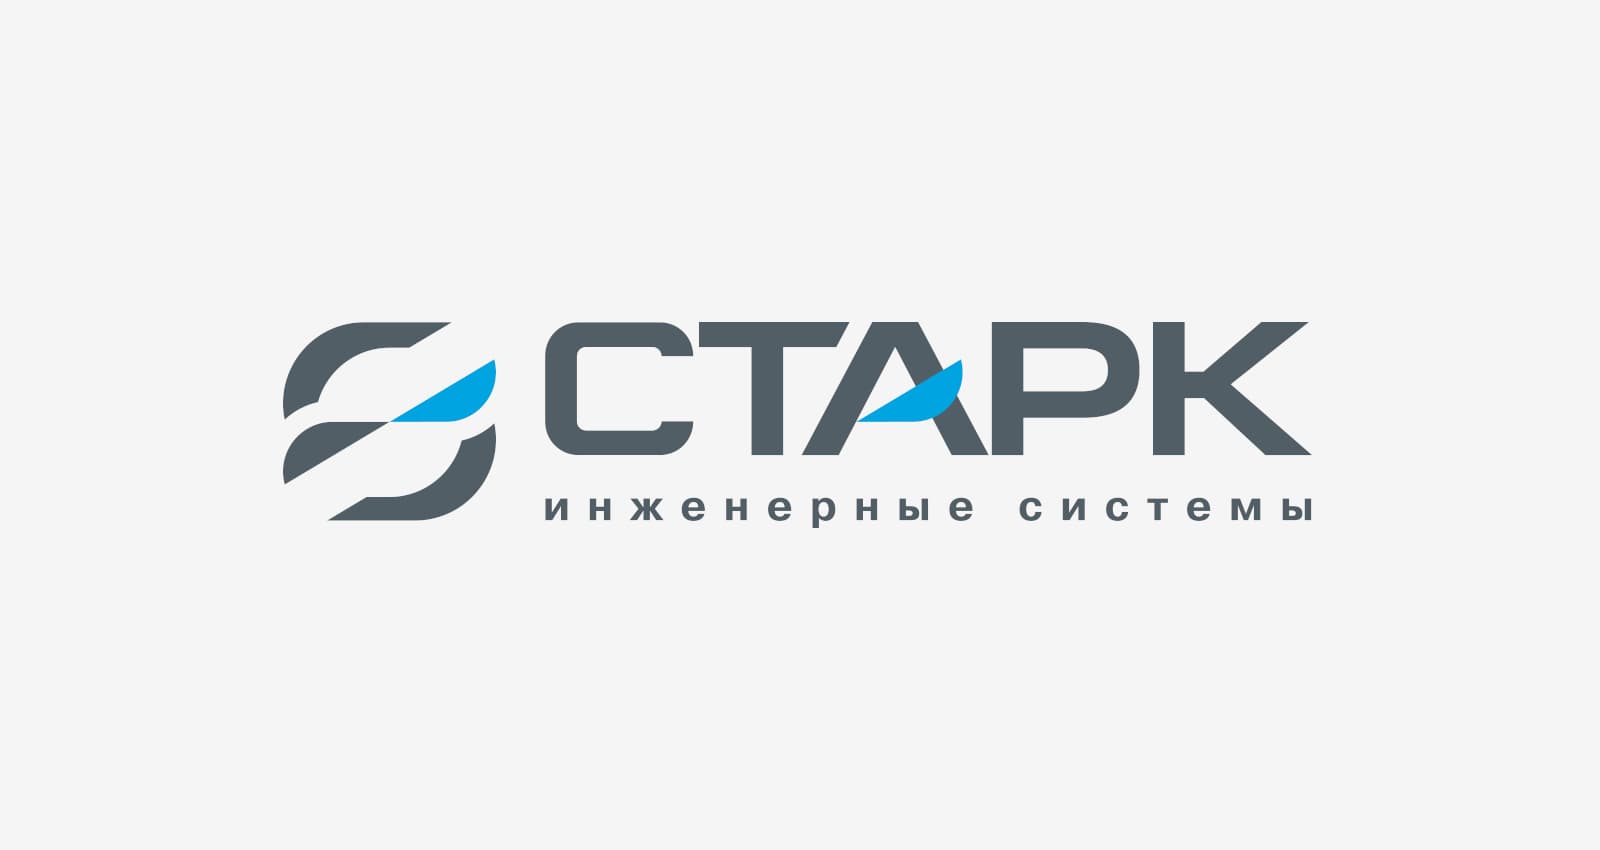 Разработка дизайна логотипа и элементов фирменного стиля для инжиниринговой компании «Старк»